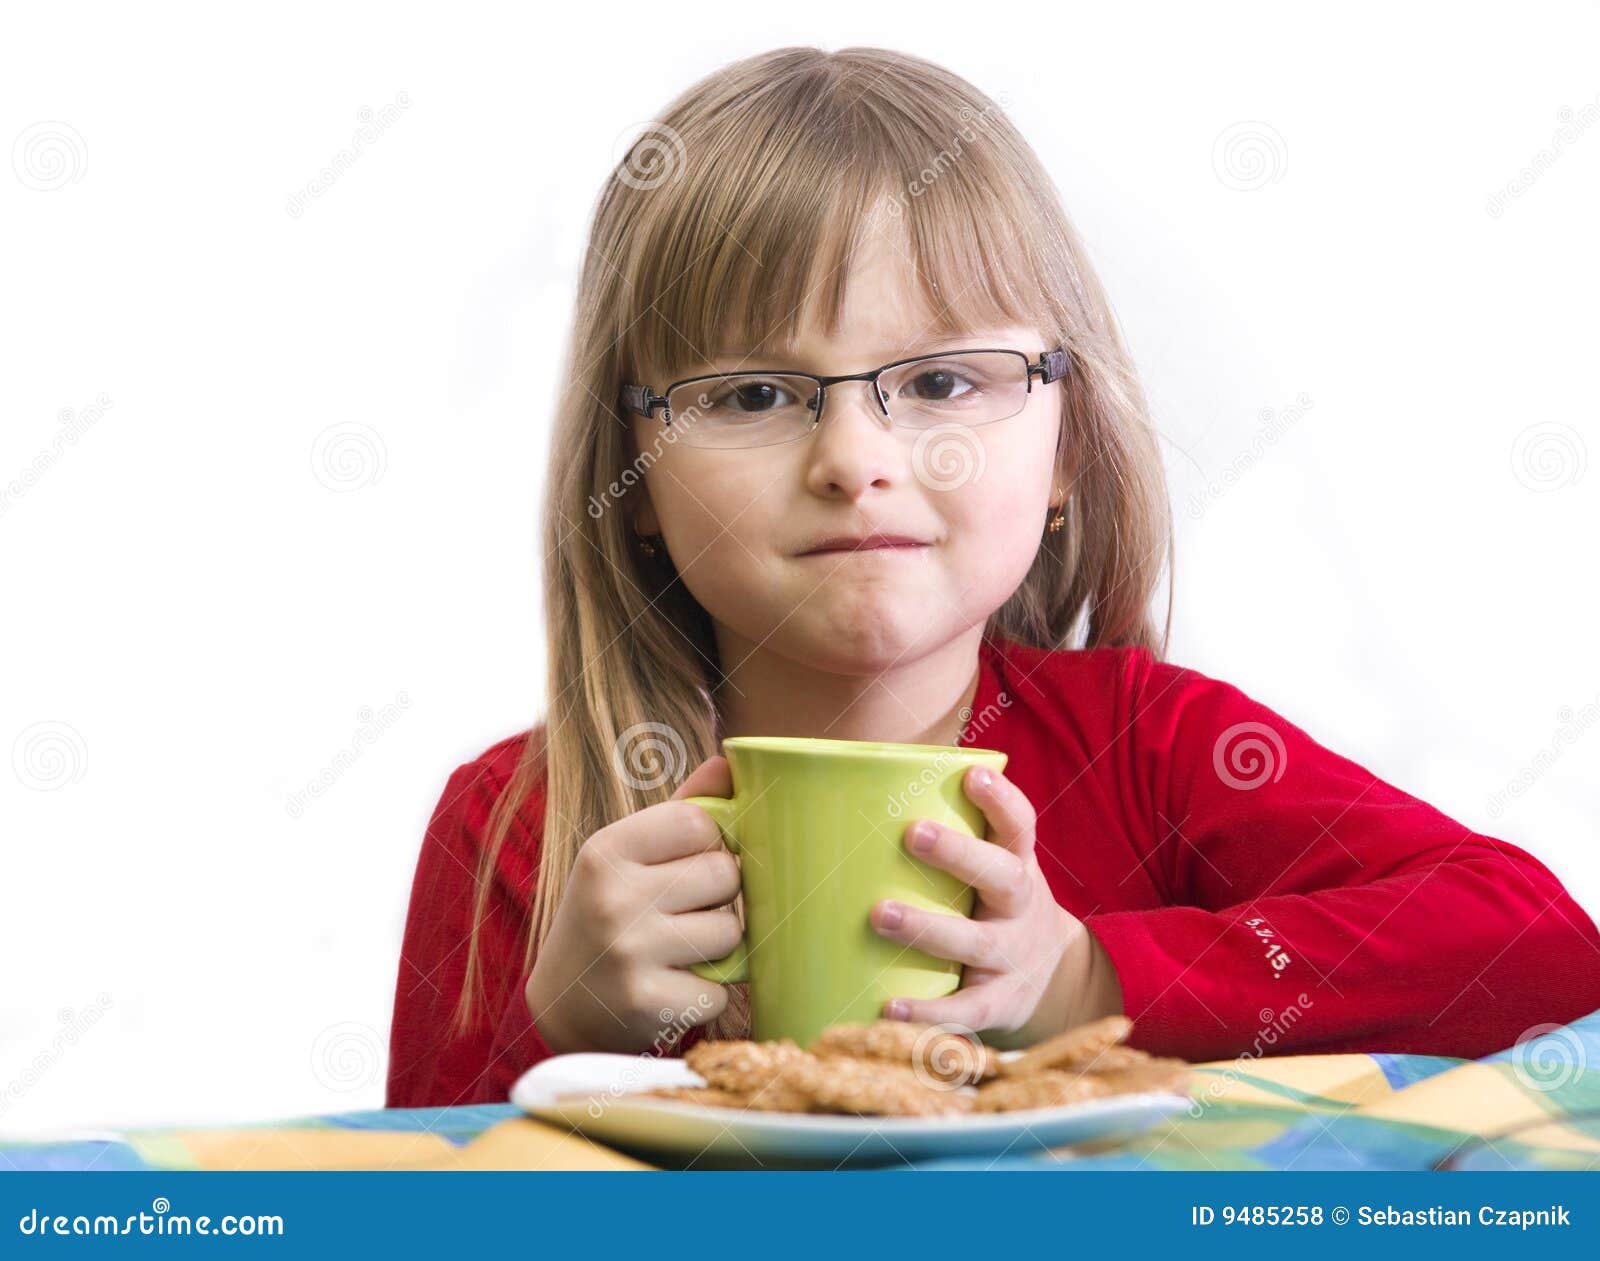 Frühstückmädchen. Portrait eines jungen Mädchens, das am Frühstückstische, weißer Hintergrund sitzt.